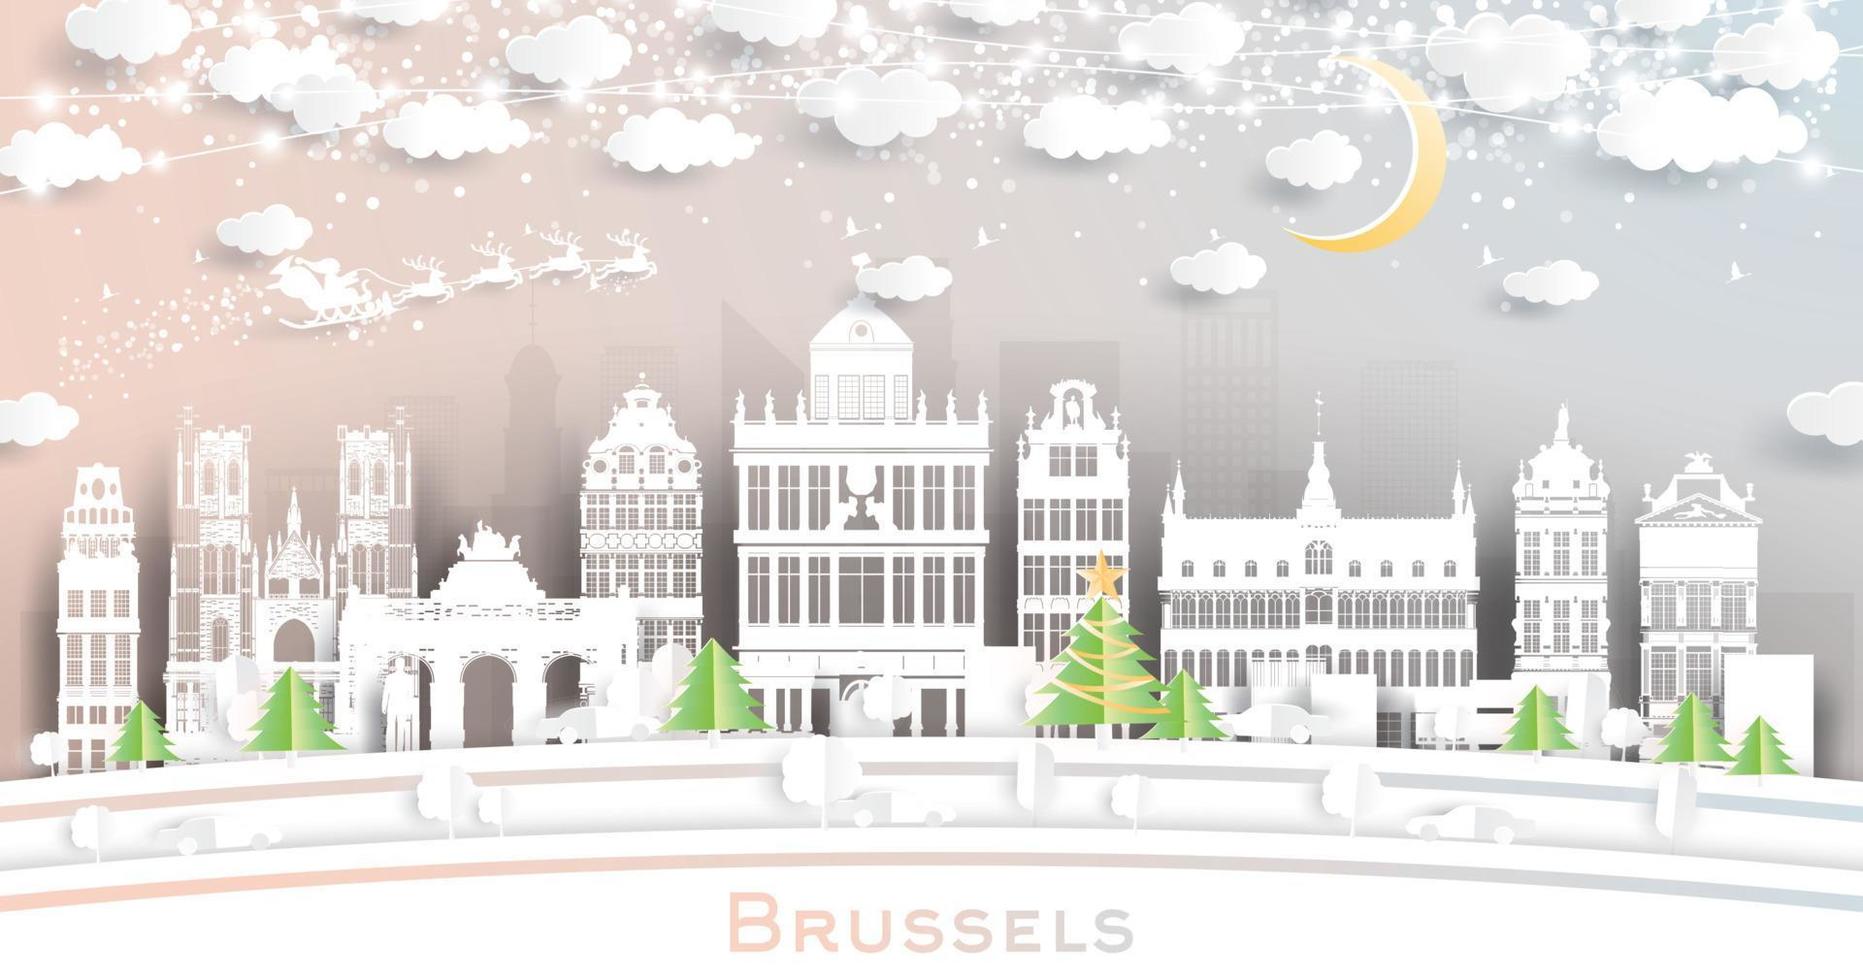 Brussel belgie stad horizon in papier besnoeiing stijl met sneeuwvlokken, maan en neon guirlande. vector